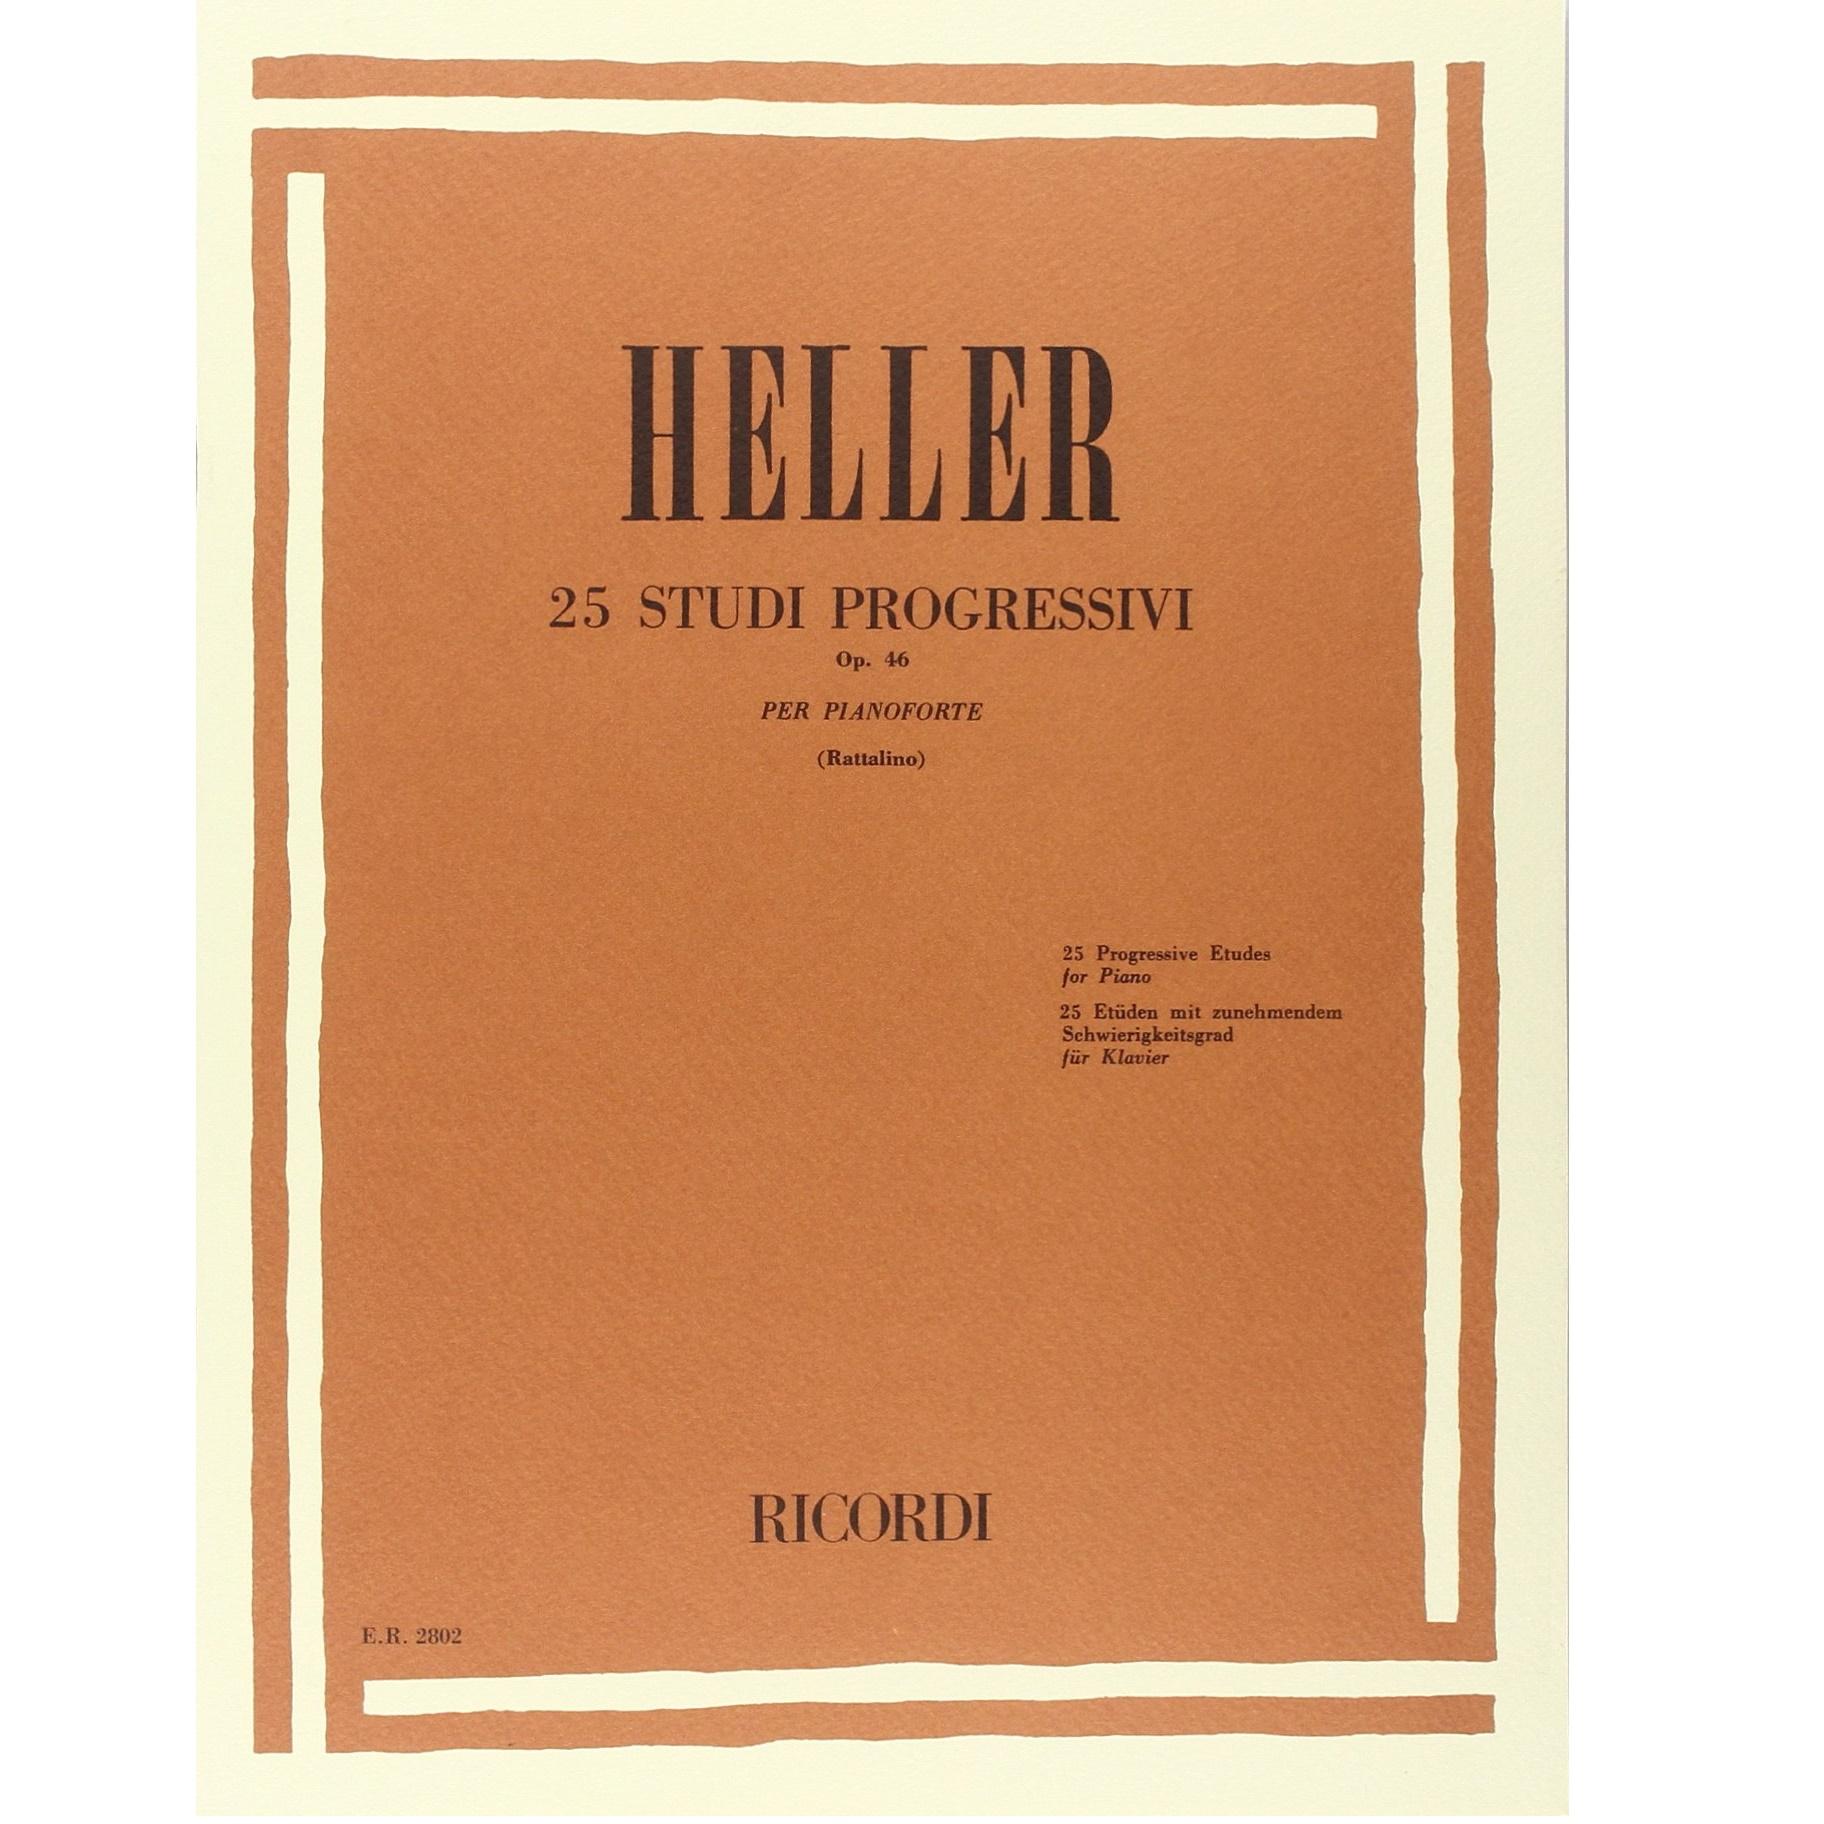 Heller 25 STUDI PROGRESSIVI Op. 46 per pianoforte (Rattalino) - Ricordi